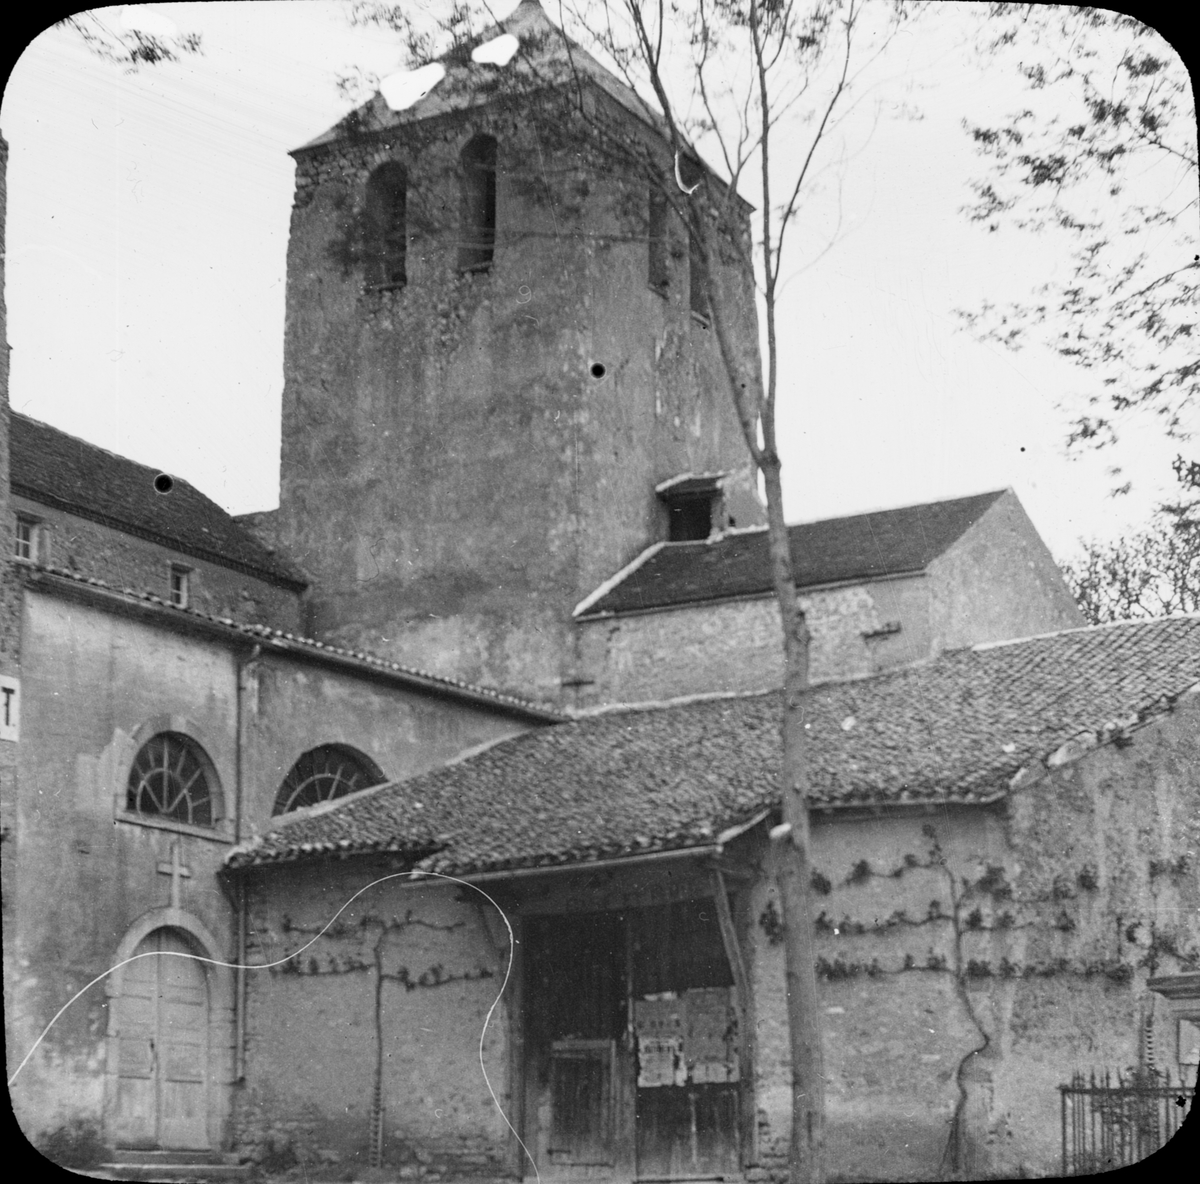 Skioptikonbild med motiv av kyrka i Cusset, Frankrike.
Bilden har förvarats i kartong märkt: Vichy